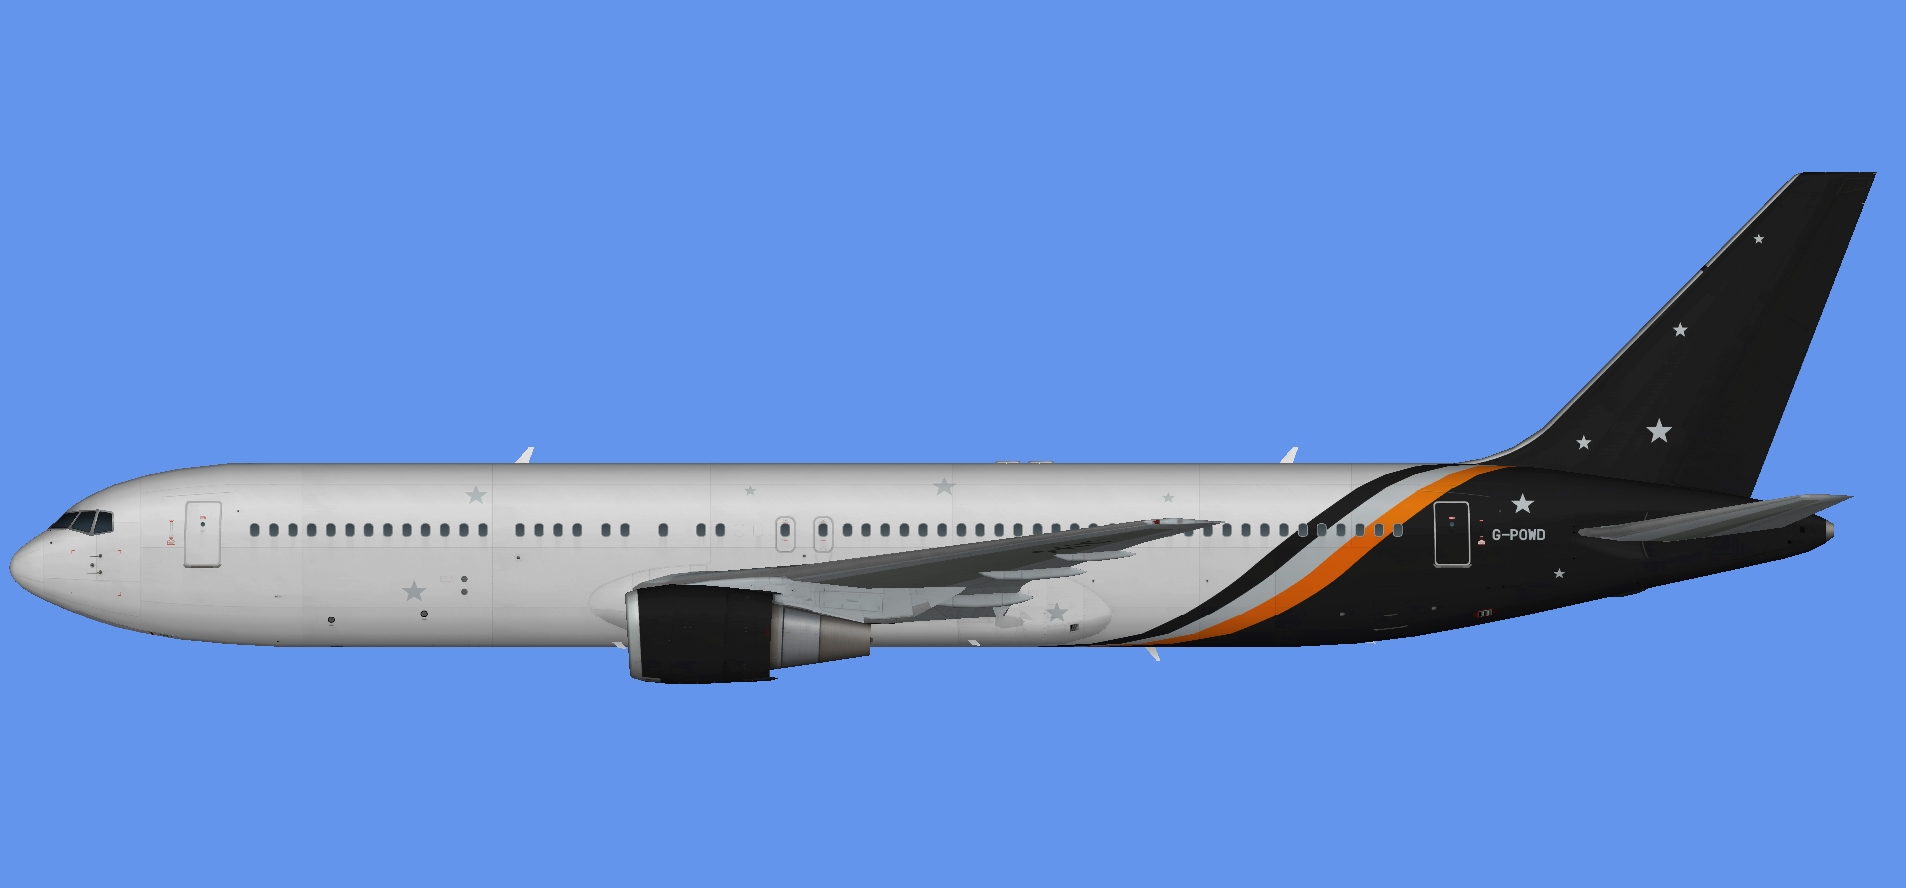 Titan Airways Boeing 767-300